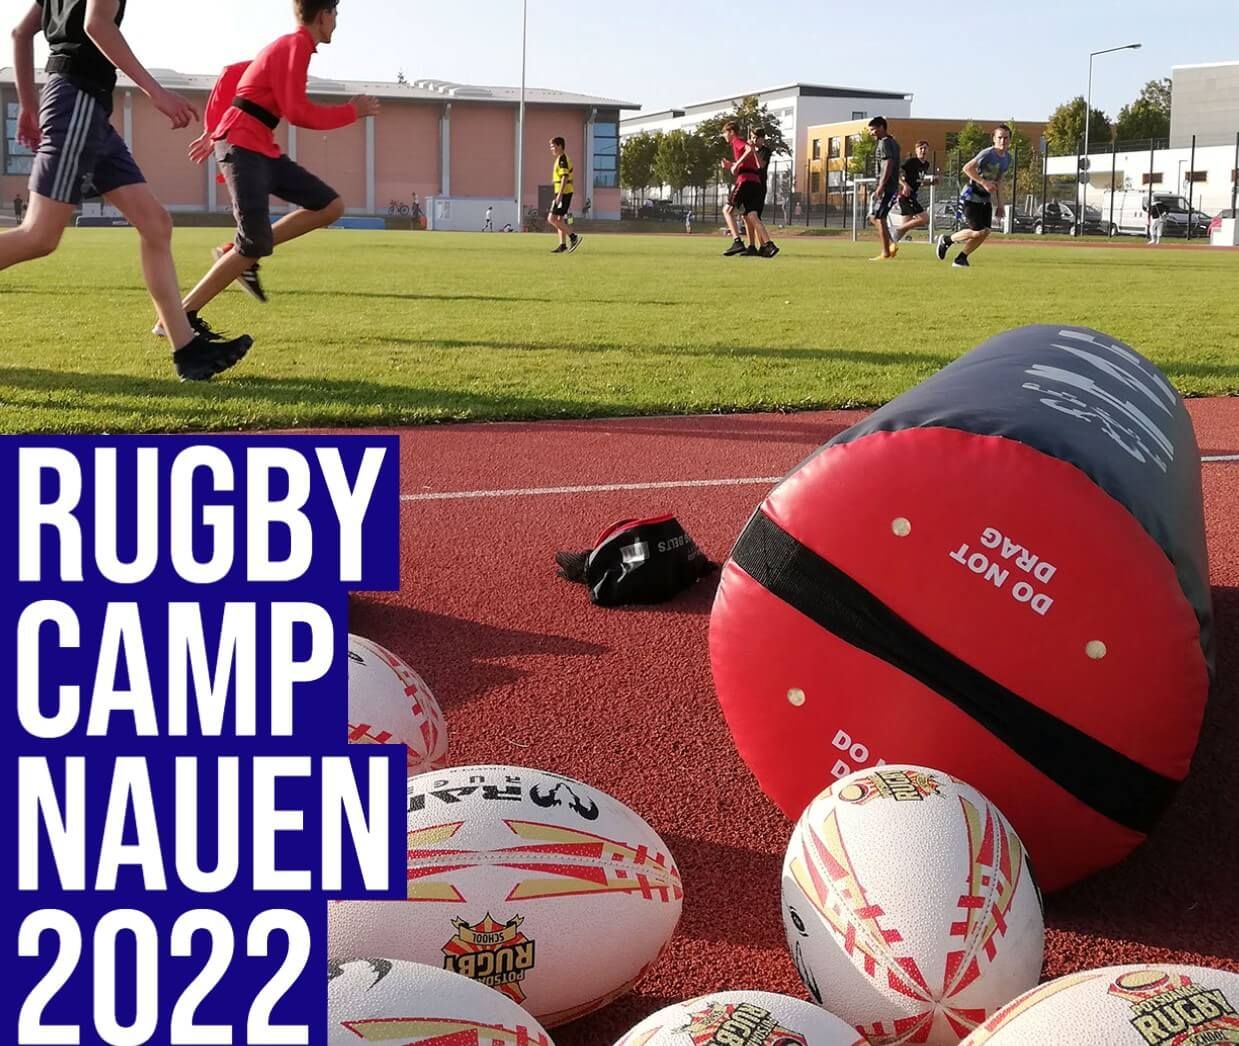 Rugby Camp Nauen 2022